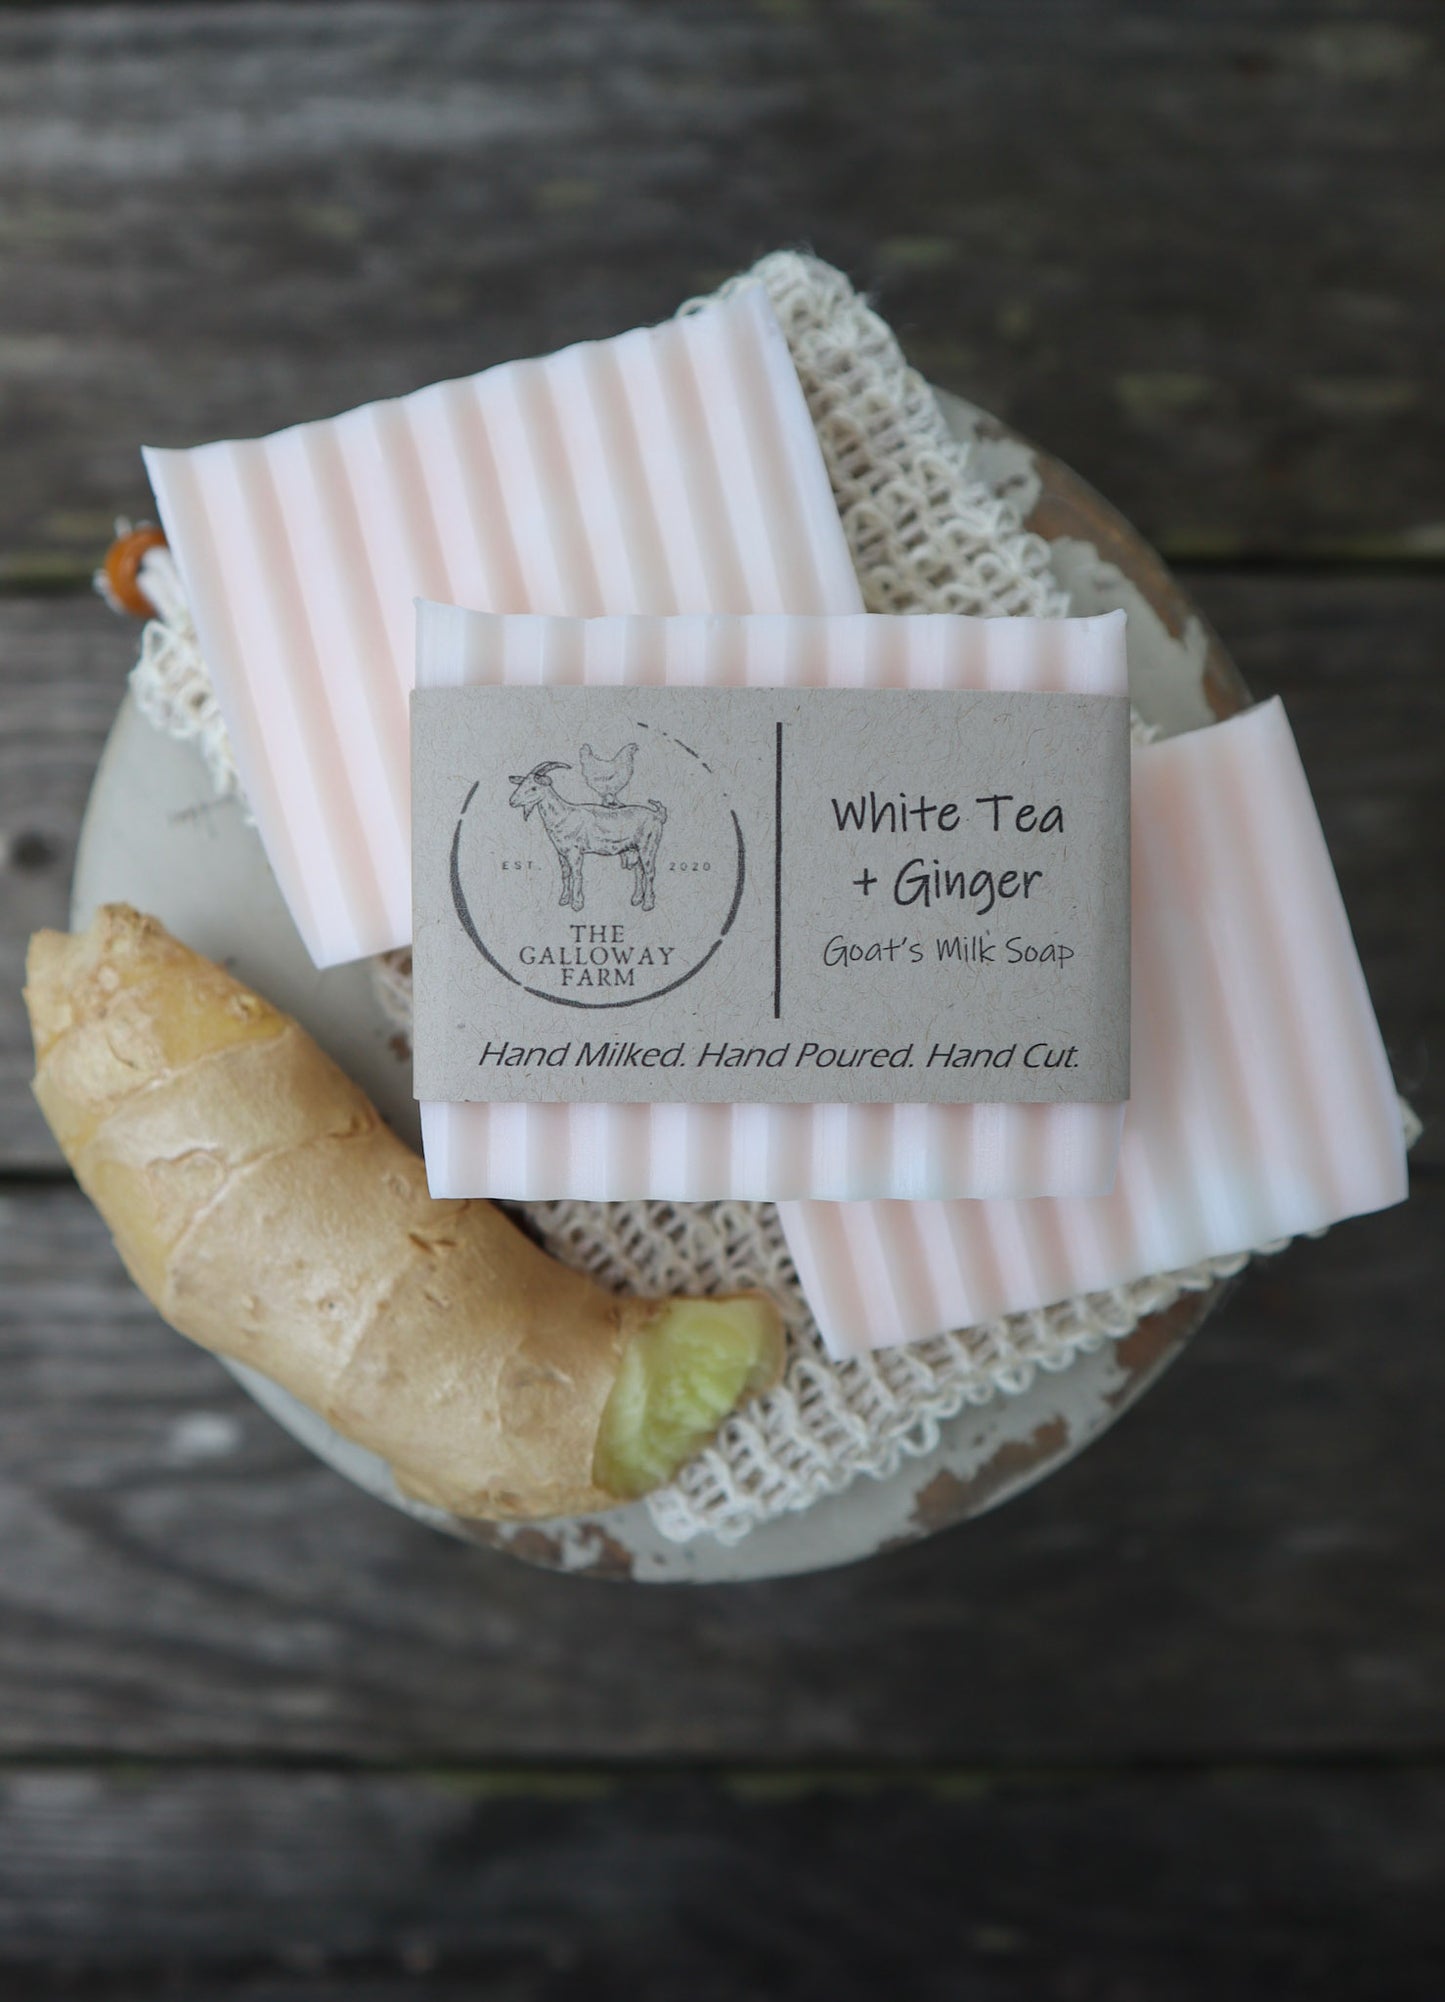 White Tea + Ginger Goat's Milk Soap